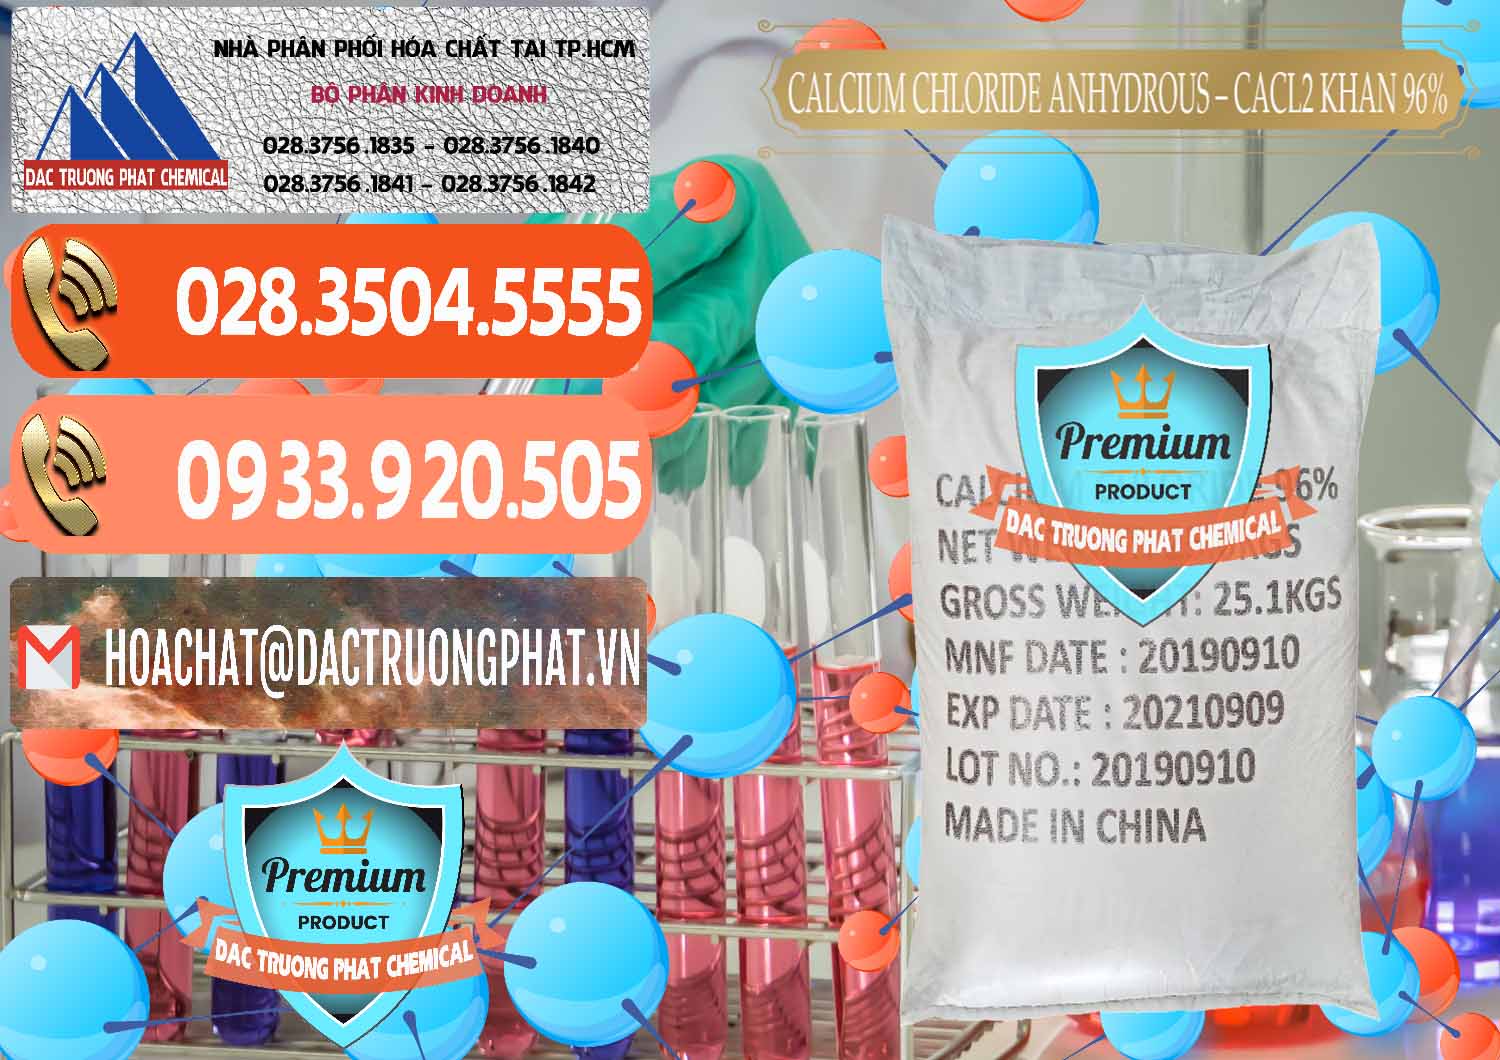 Cty nhập khẩu và bán CaCl2 – Canxi Clorua Anhydrous Khan 96% Trung Quốc China - 0043 - Cung cấp _ kinh doanh hóa chất tại TP.HCM - hoachatmientay.com